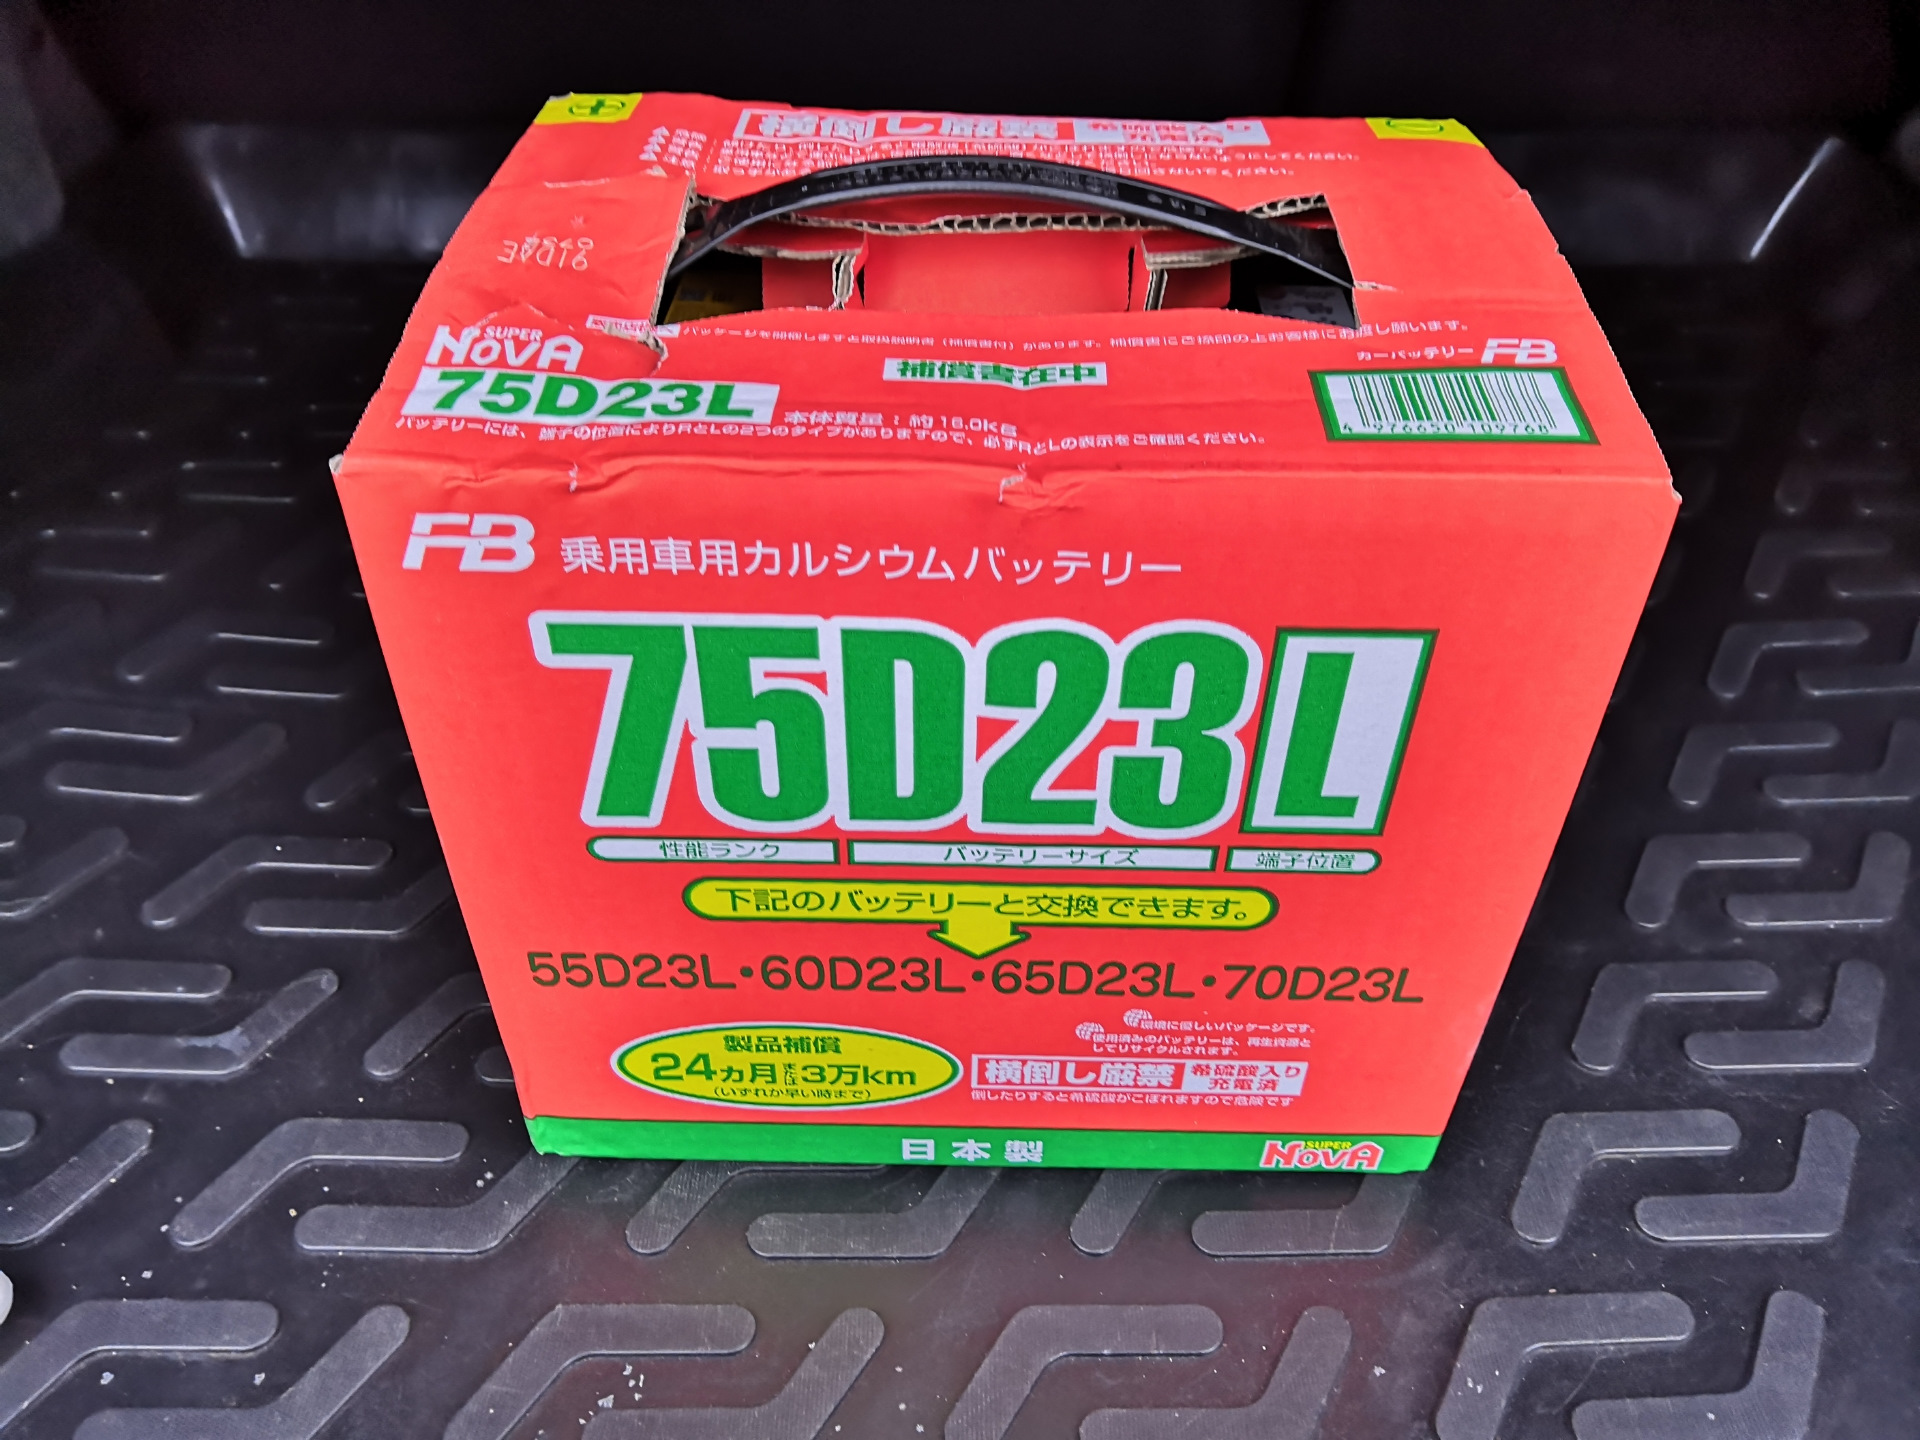 75d23l battery